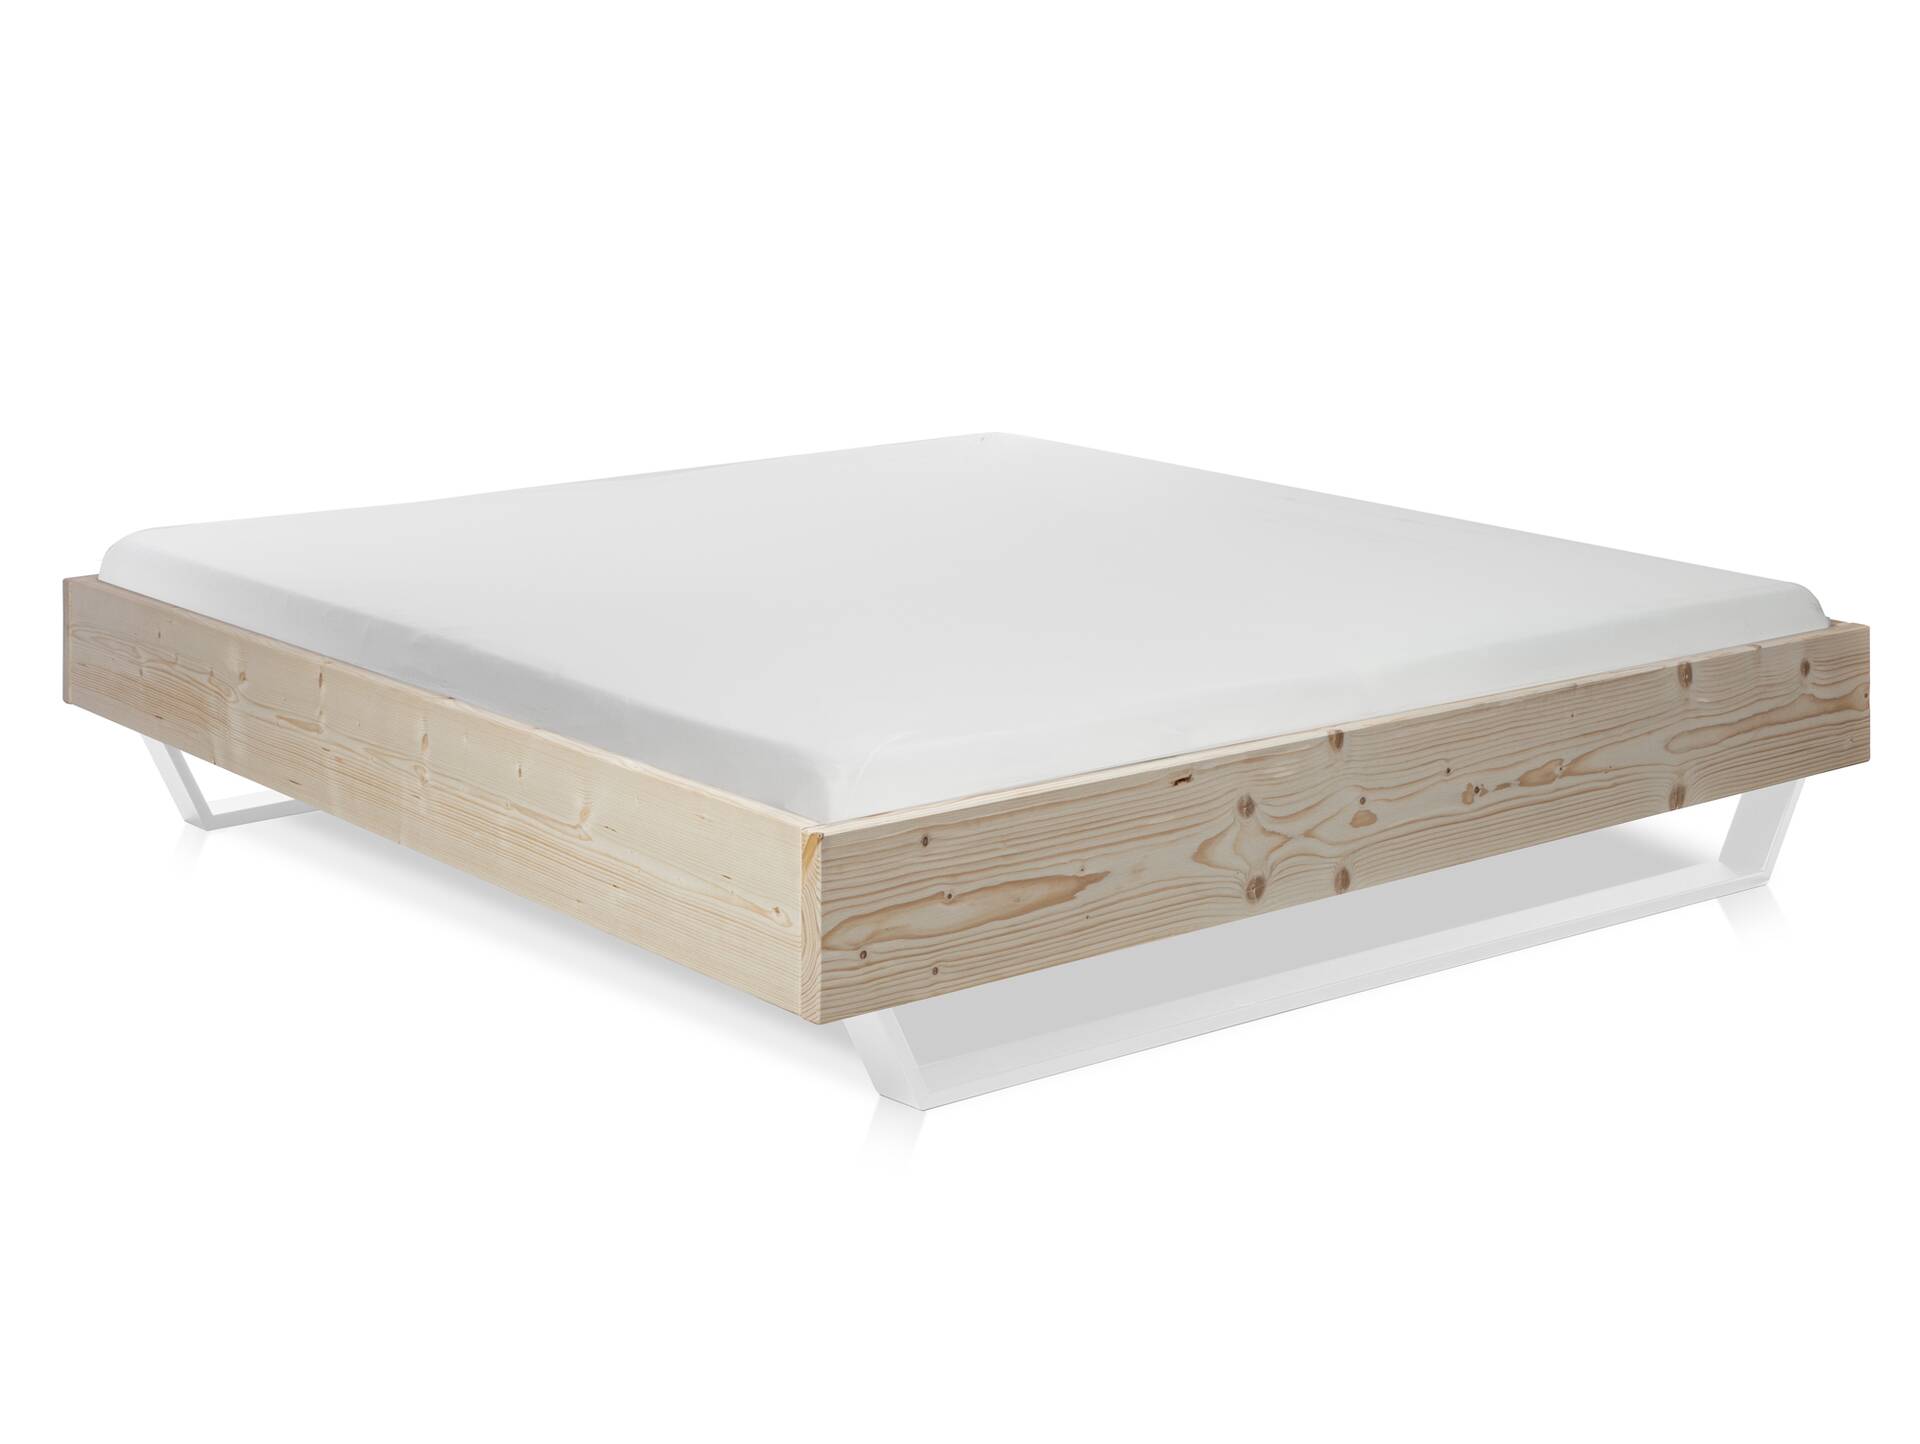 LUKY Kufenbett ohne Kopfteil, Material Massivholz, Fichte massiv, Kufen weiß 90 x 200 cm | natur